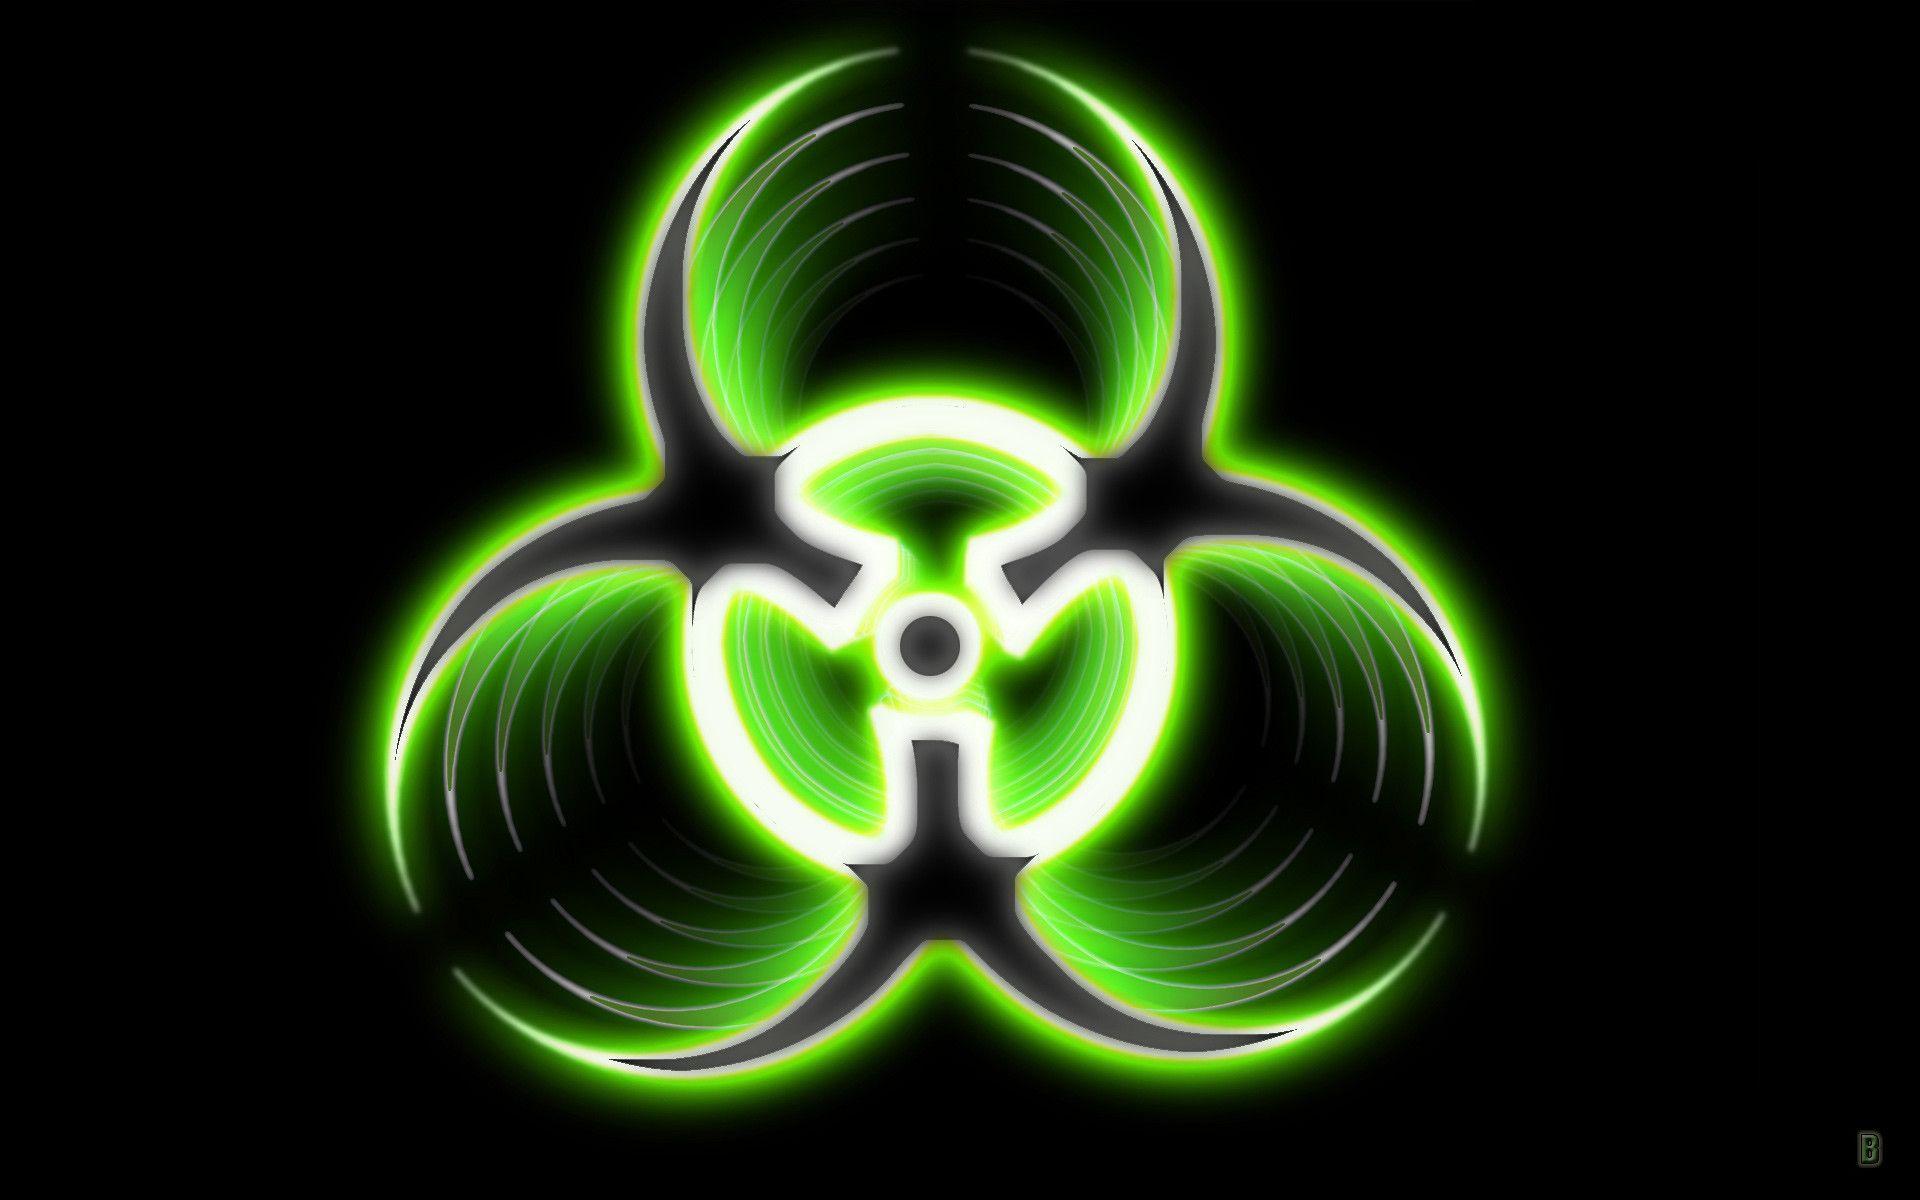 Cool Radioactive Logo - Radioactive Symbol Wallpaper ·①